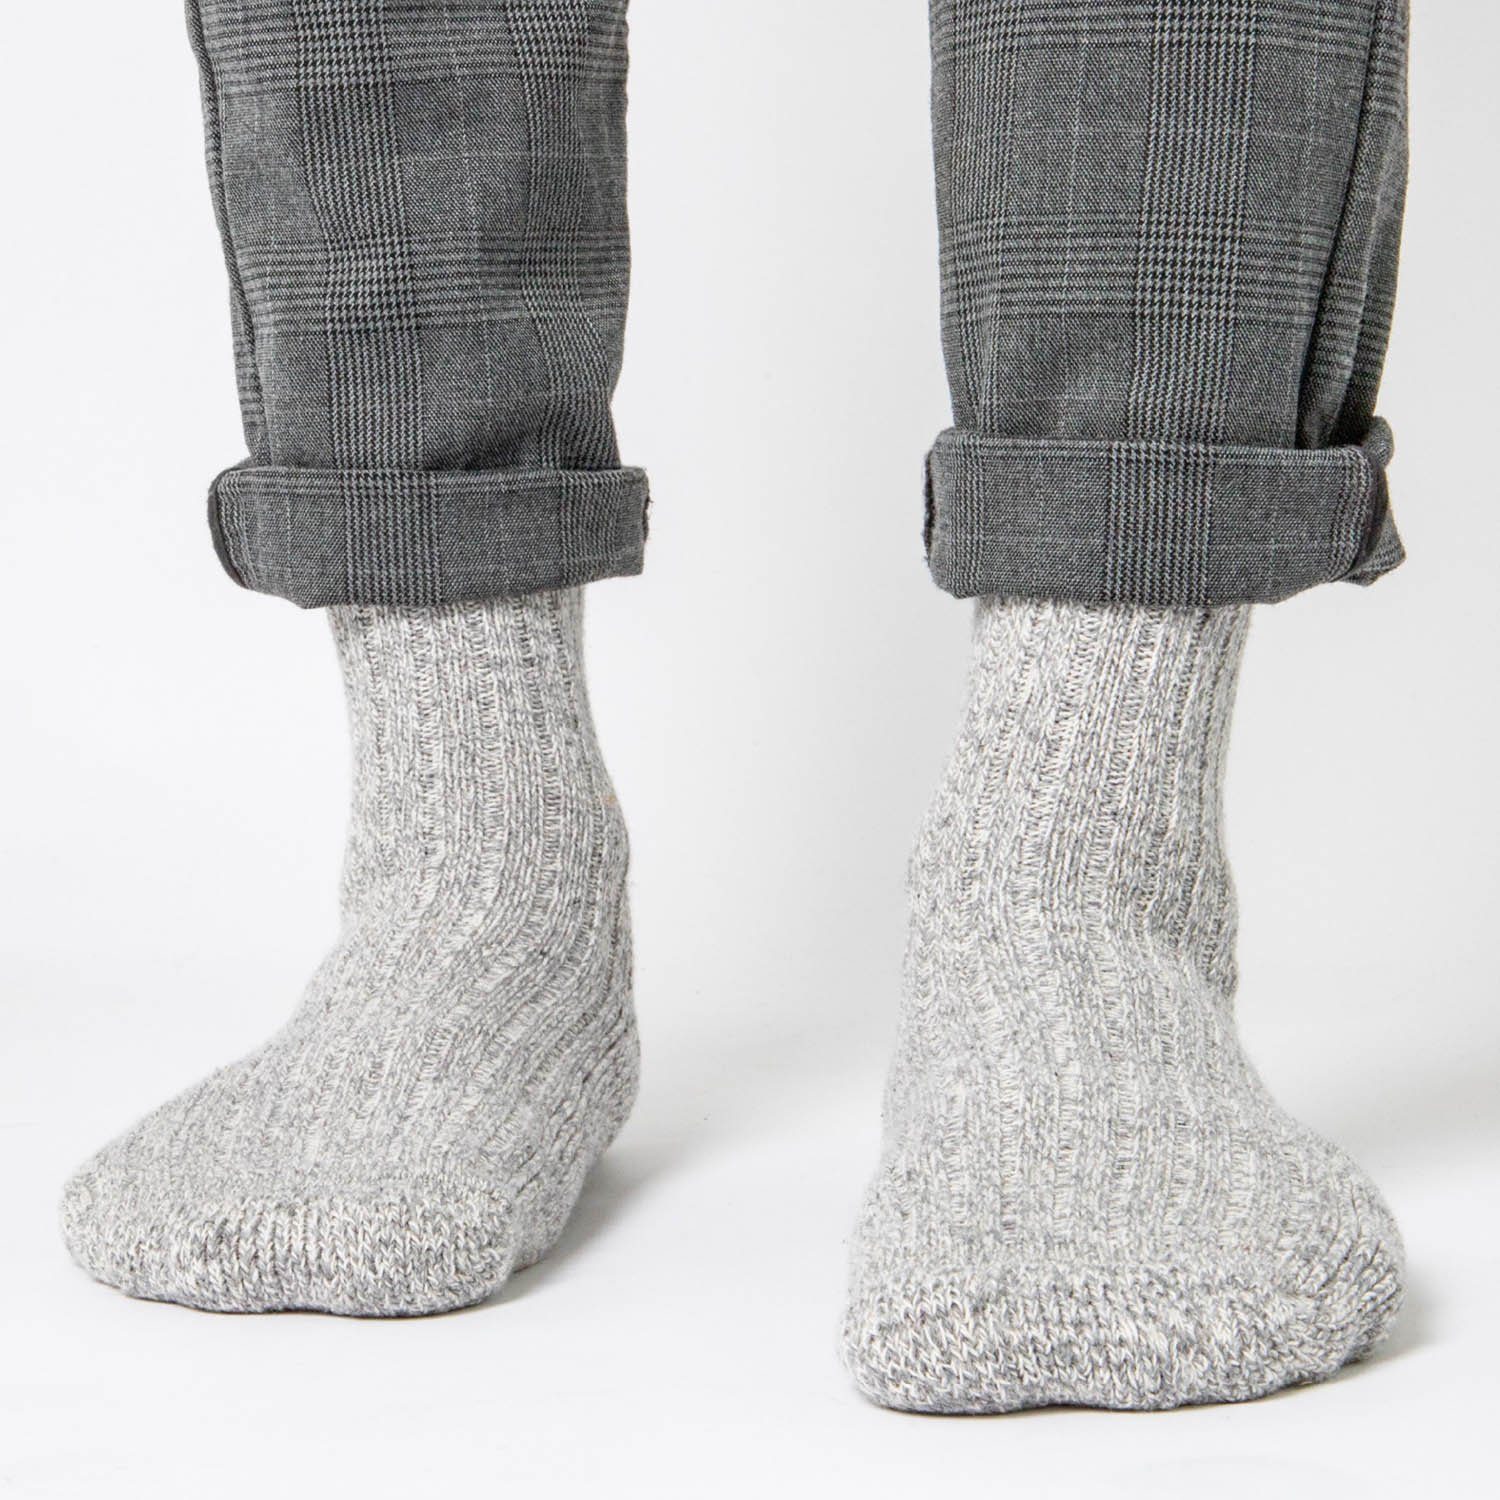 6er Herren OCCULTO Finn) Norweger Socken Pack Occutlo Anthra Norwegersocken (6-Paar) (Modell: